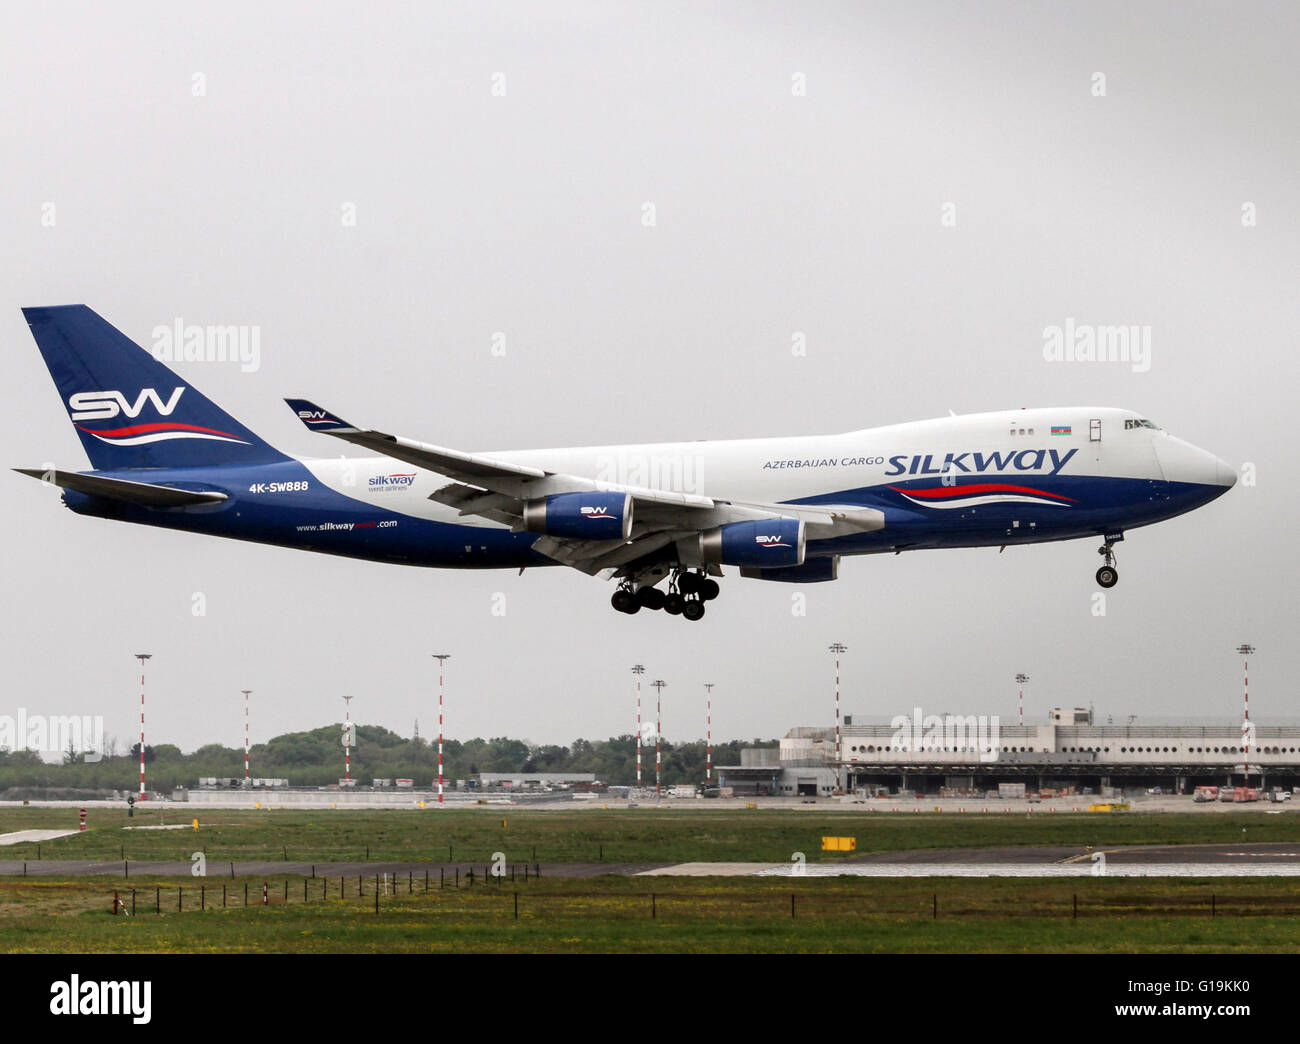 4K-SW888 Silk Way West Airlines Boeing 747-4R7F en Milán - Malpensa  Fotografía de stock - Alamy